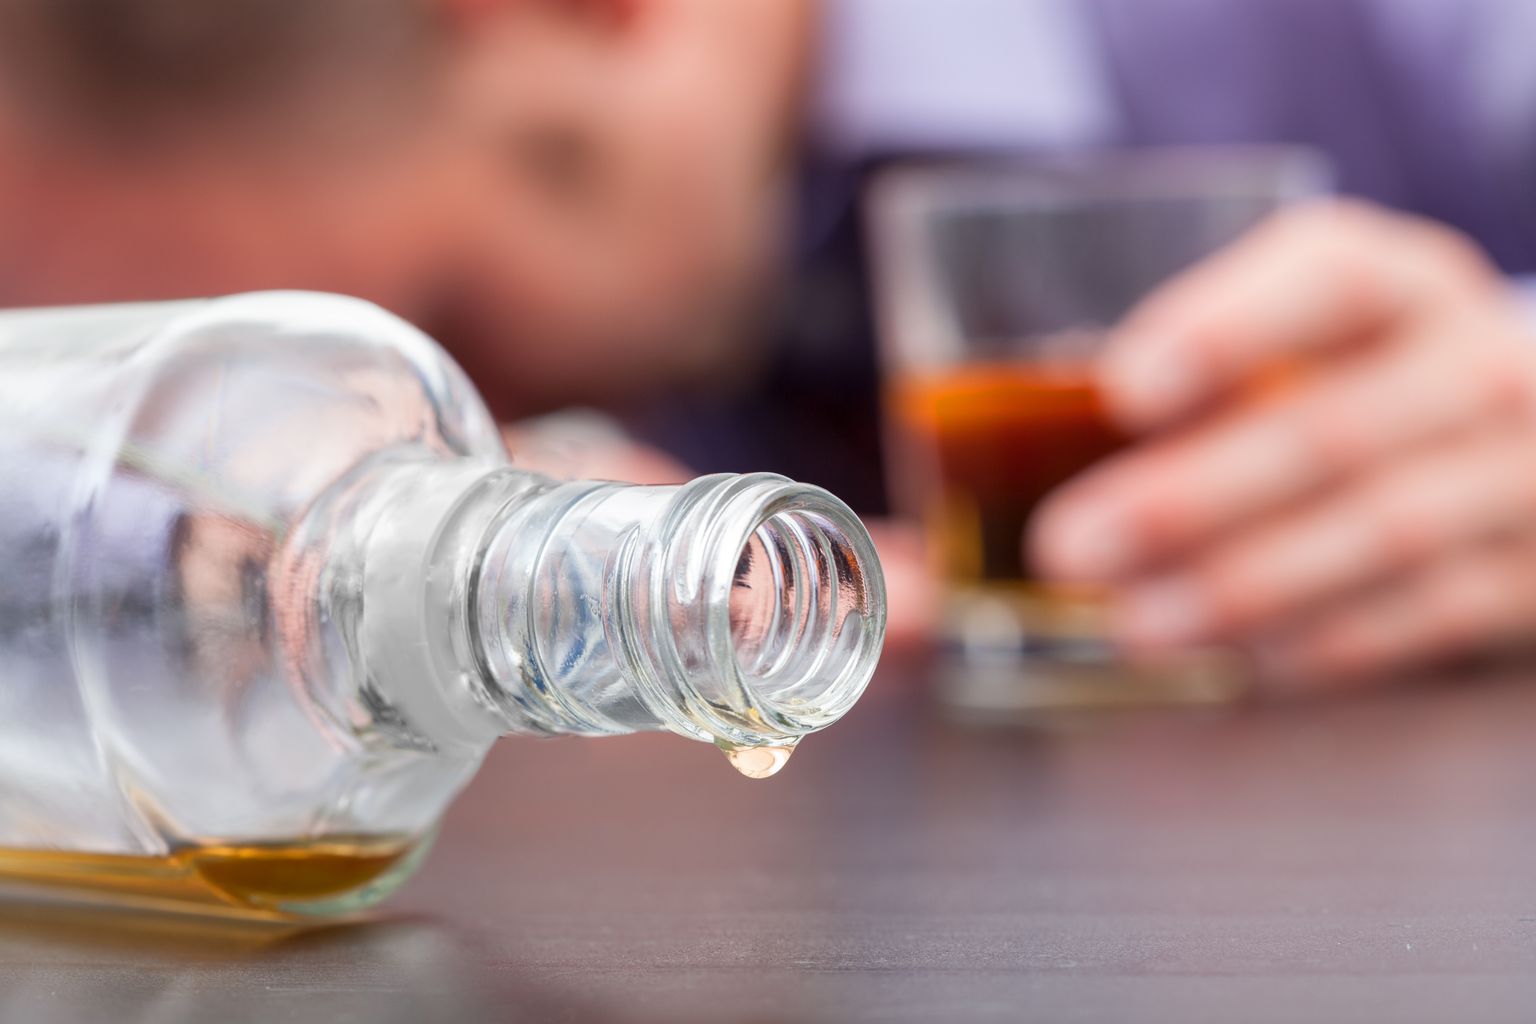 Primer plano de una botella de whisky caída y casi vacía con una persona dormida con un vaso de whisky medio lleno al fondo.